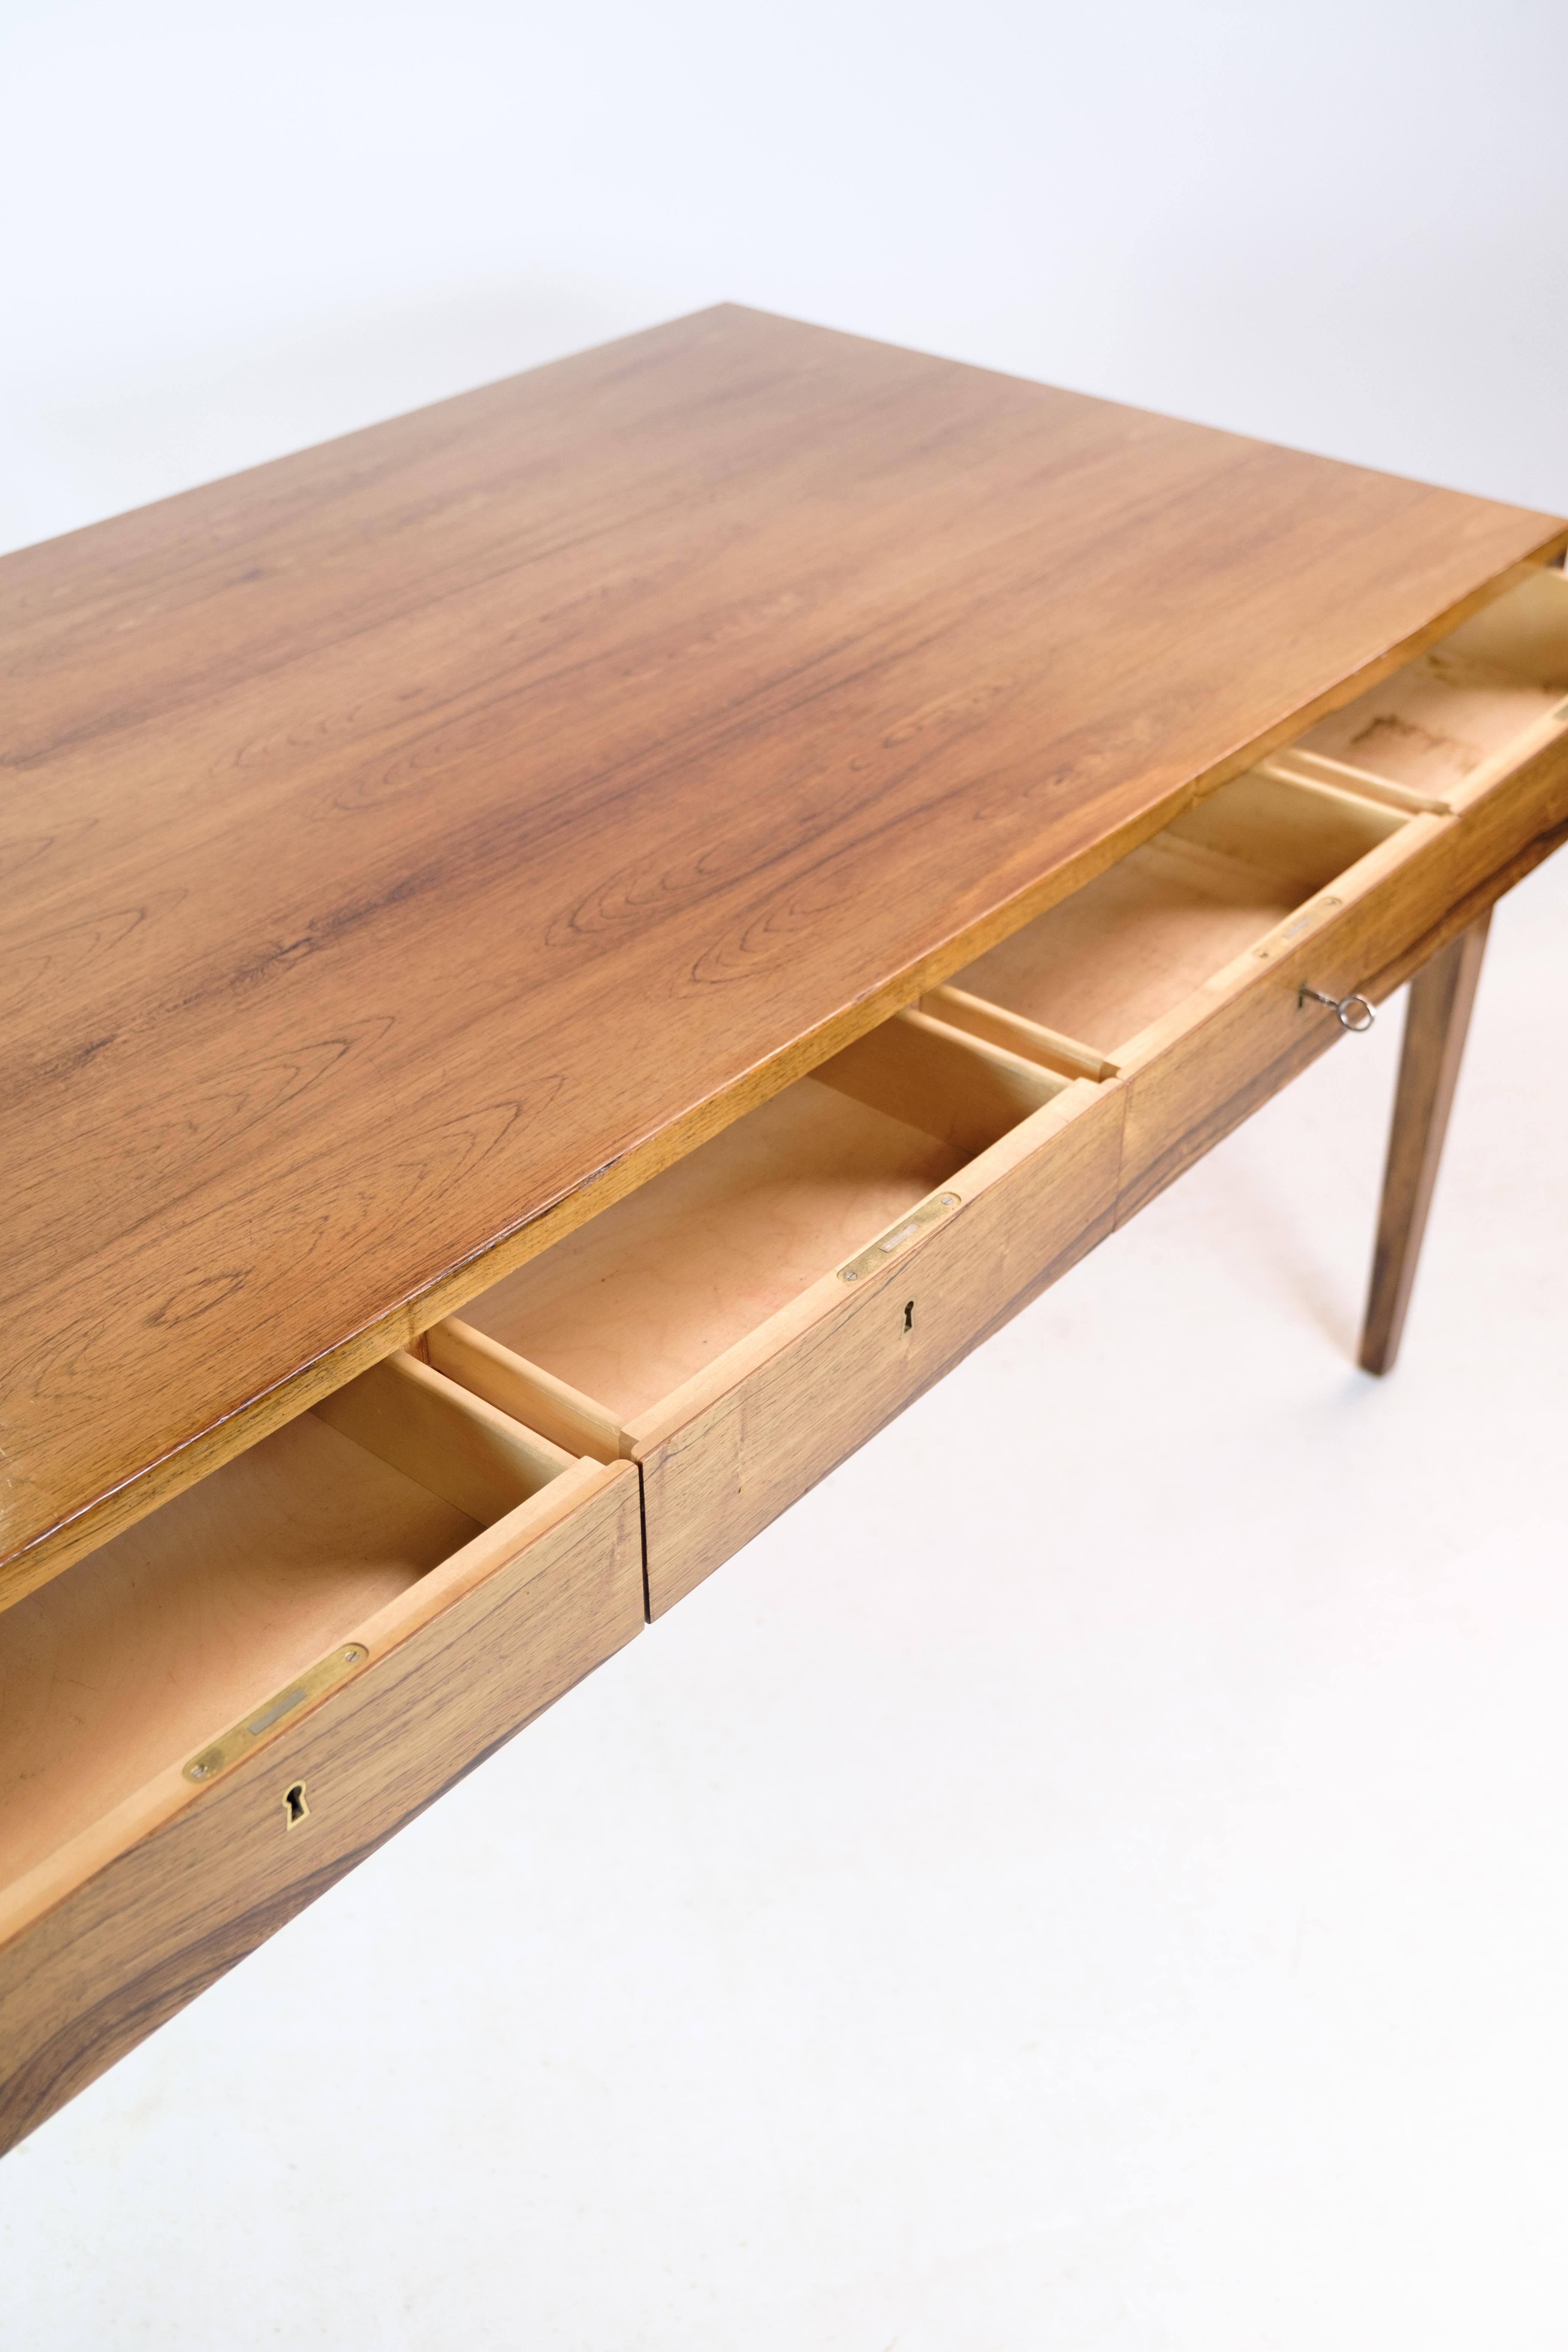 Freistehender Schreibtisch, entworfen von Severin Hansen aus Palisander, hergestellt in der Haslev Møbelfabrik um die 1960er Jahre. Inklusive Schlüssel. Der Schreibtisch hat 4 Schubladen und Schlüssellöcher aus Messing.

Dieses Produkt wird in